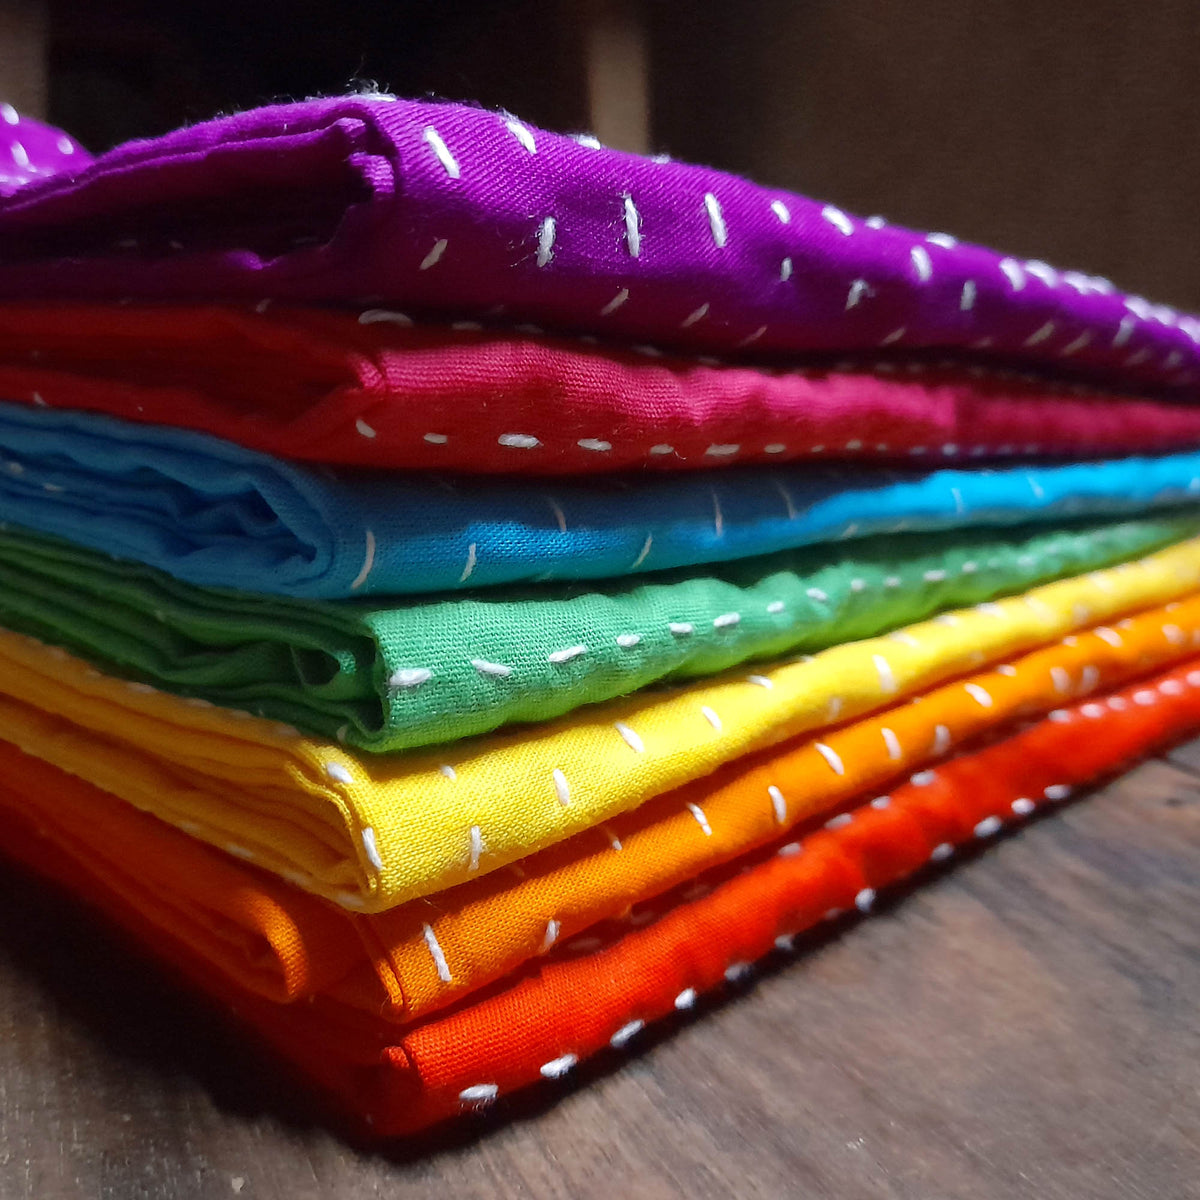 Rainbow Colour Kantha Cushion Covers 18''/45cm